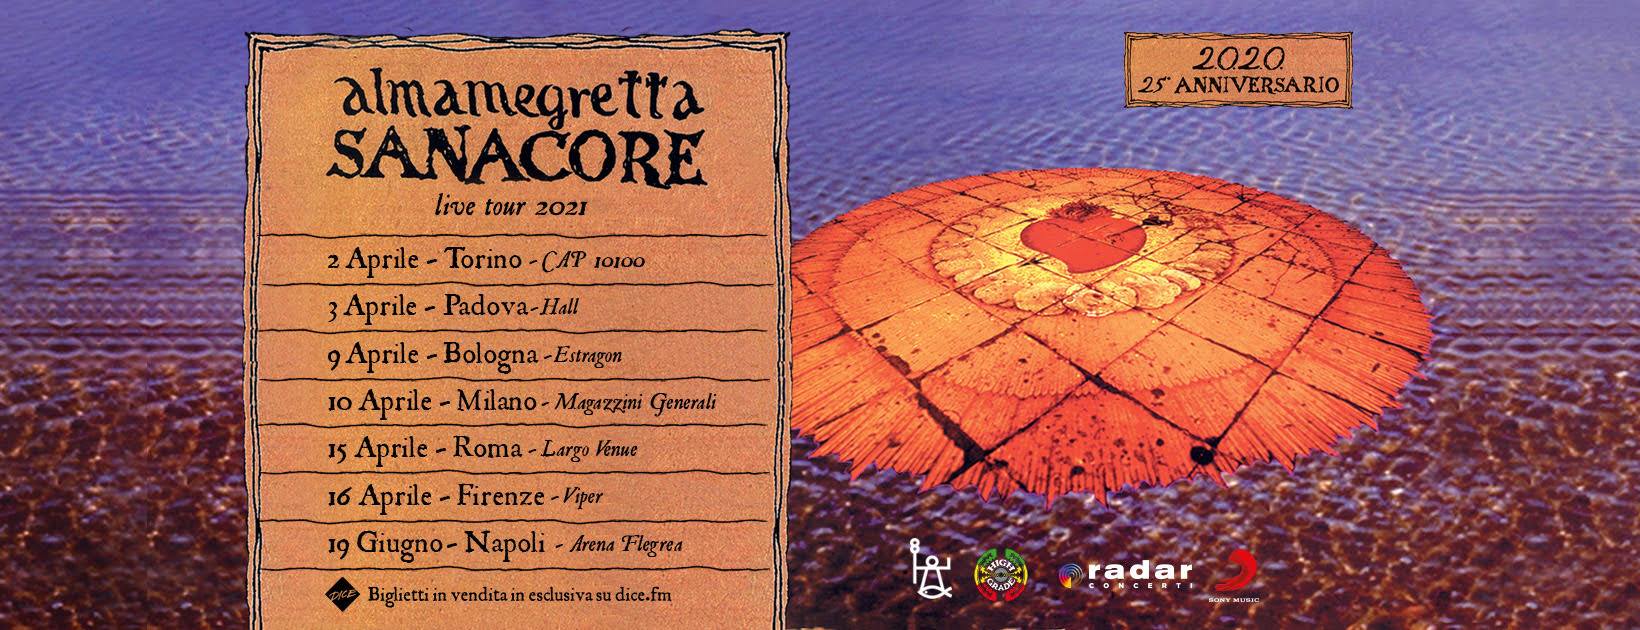 Almamegretta, Sanacore live tour 2021, al Viper Theatre di Firenze